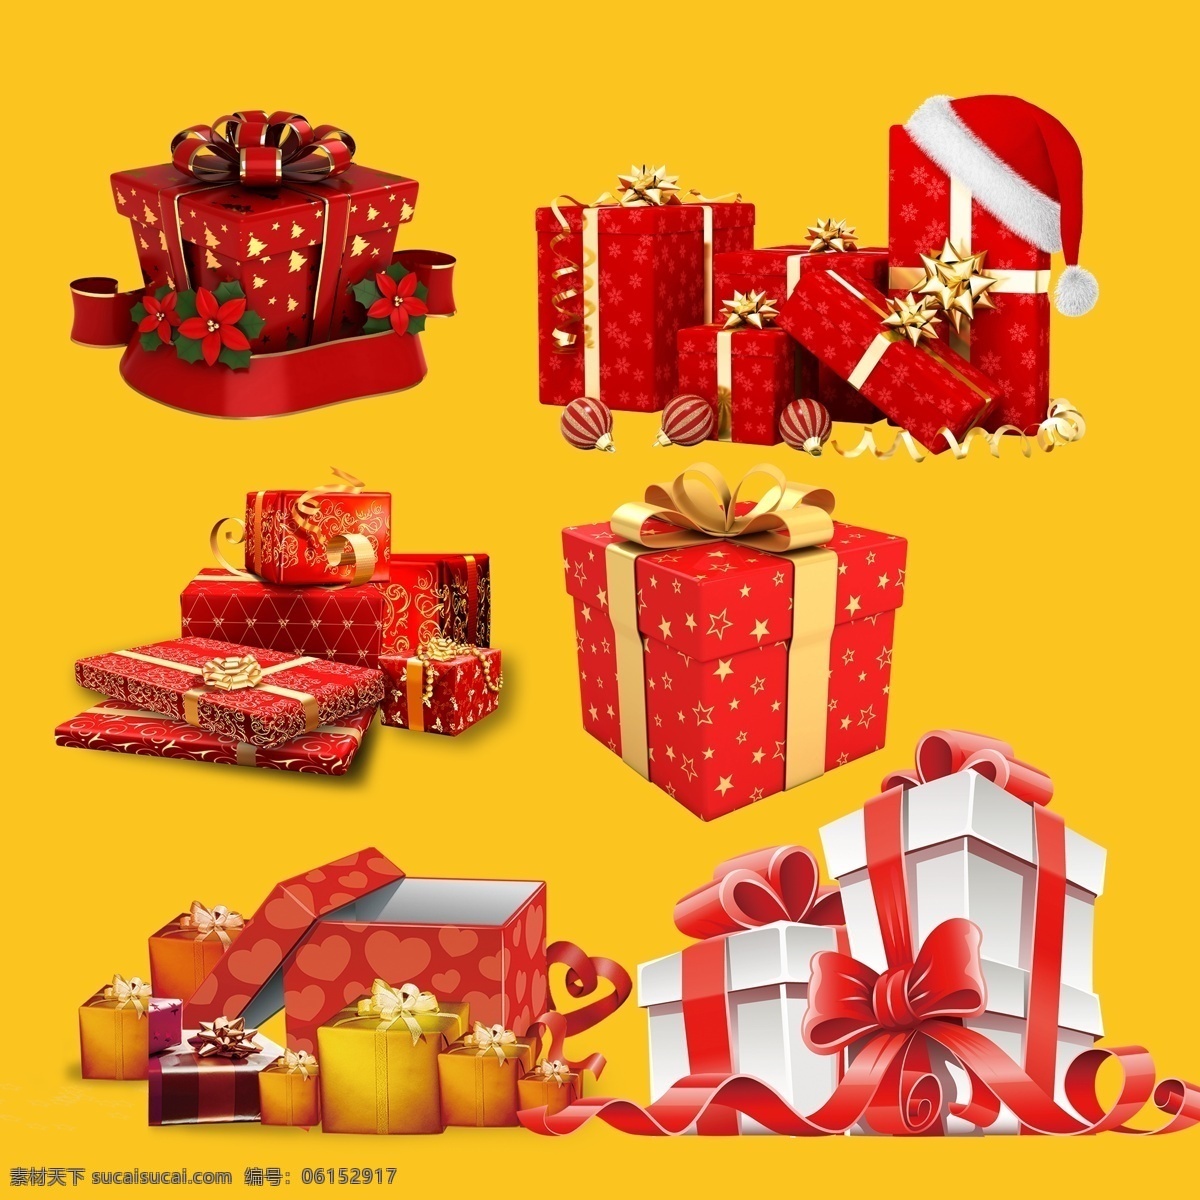 圣诞红礼品盒 礼品盒 精美礼品盒 礼品盒设计 节日庆典 节日 圣诞节 分层